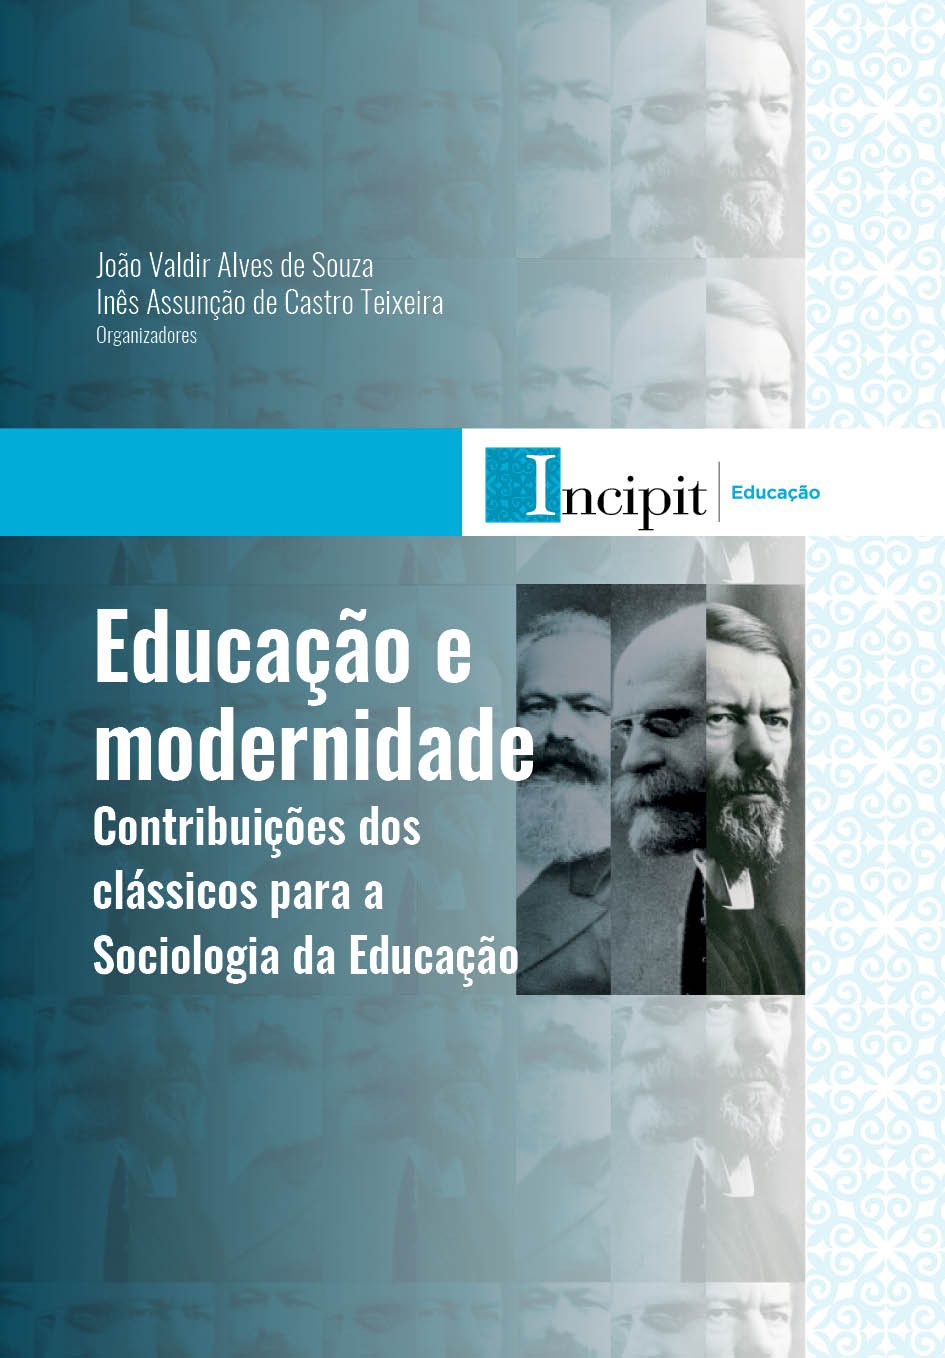 Contribuições dos clássicos para a Sociologia da Educação